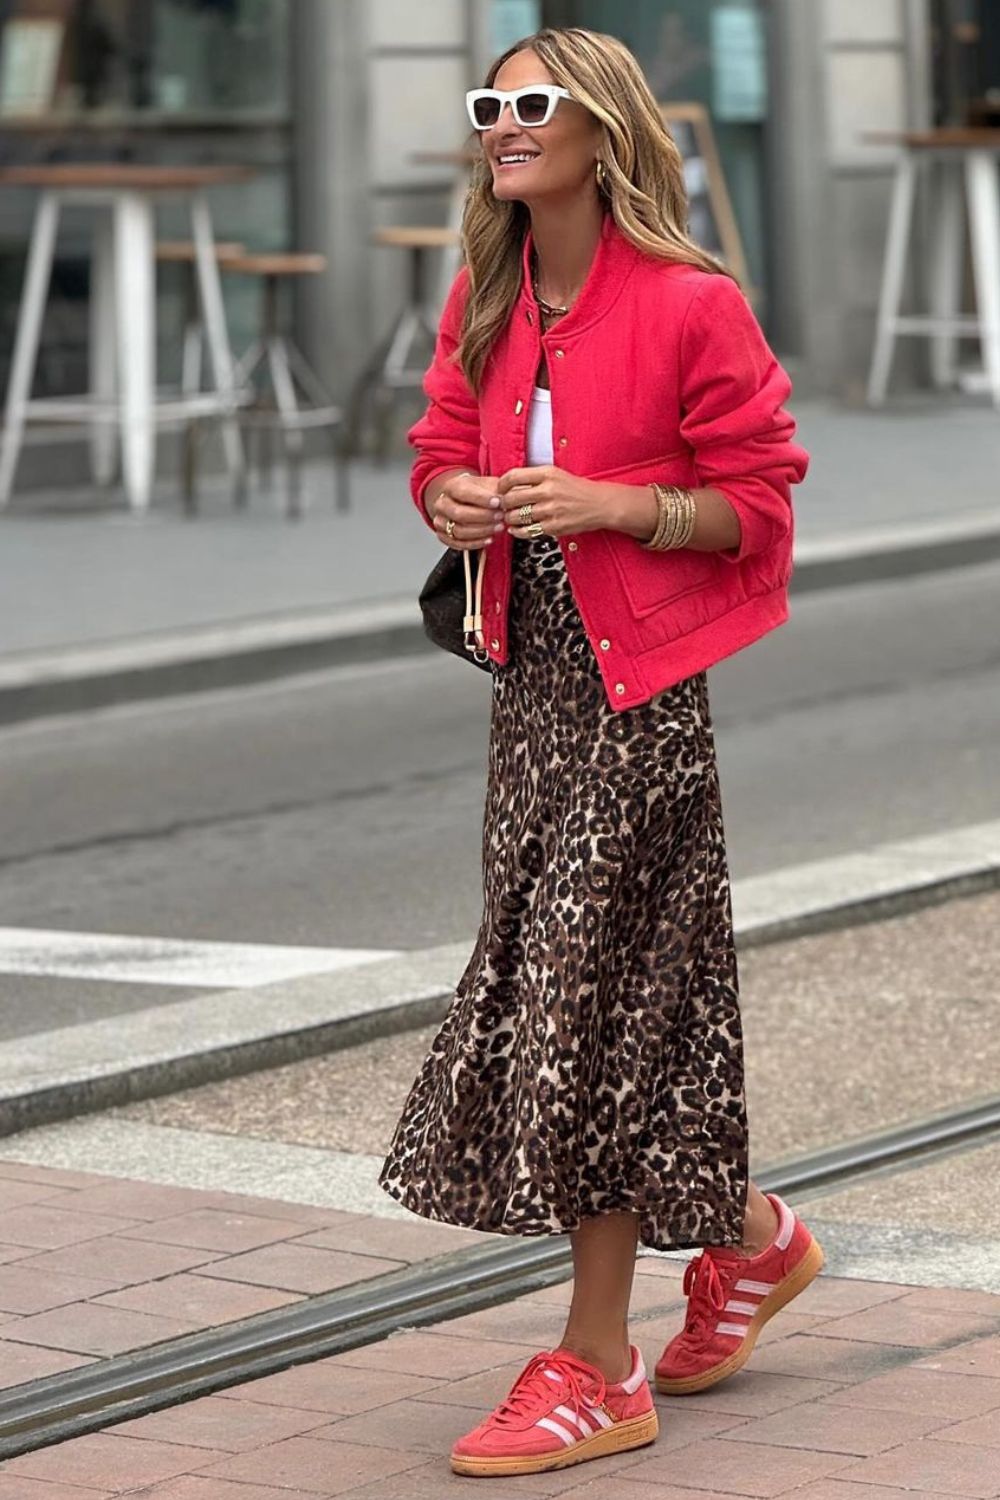 Jaqueta vermelha, saia midi rodada com estampa de animal print e tênis adidas vermelho